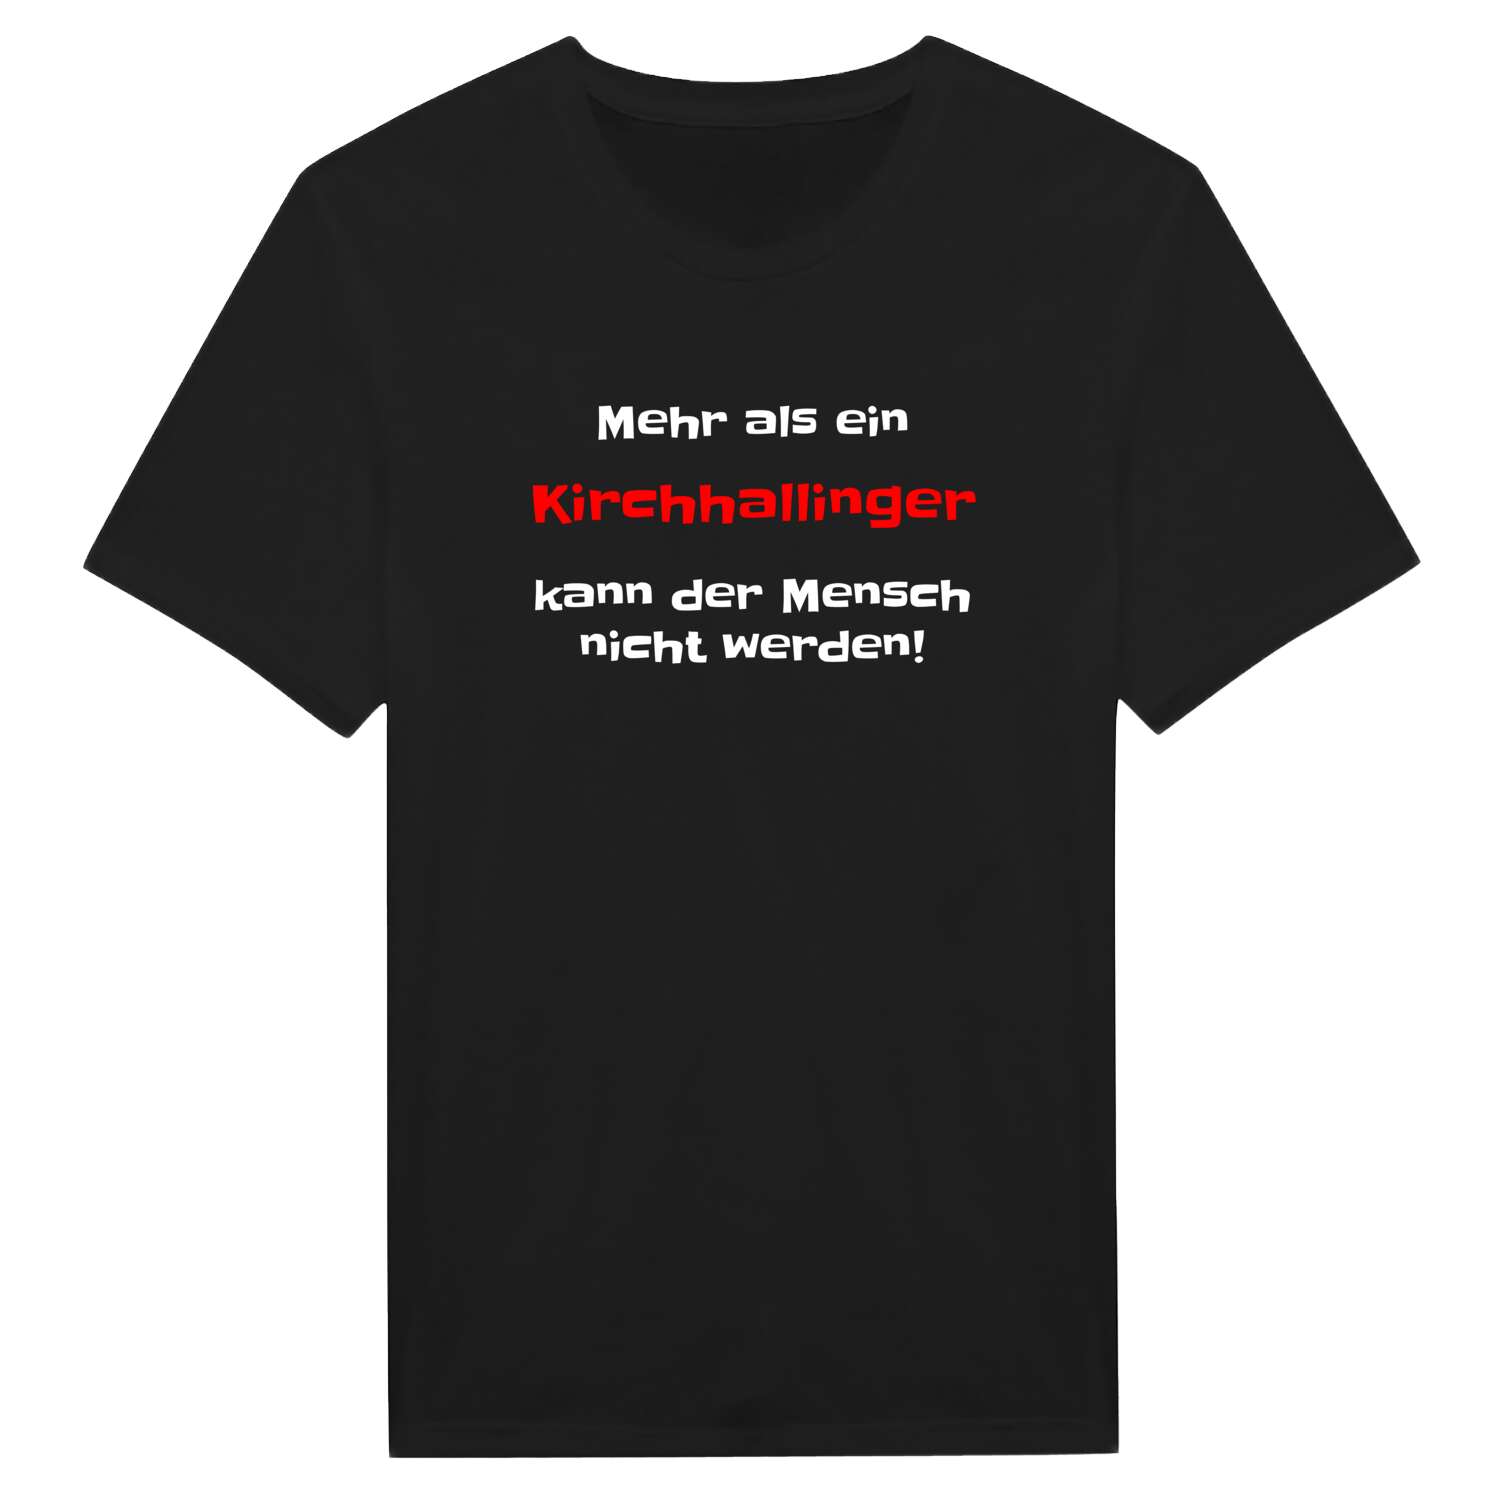 Kirchhalling T-Shirt »Mehr als ein«